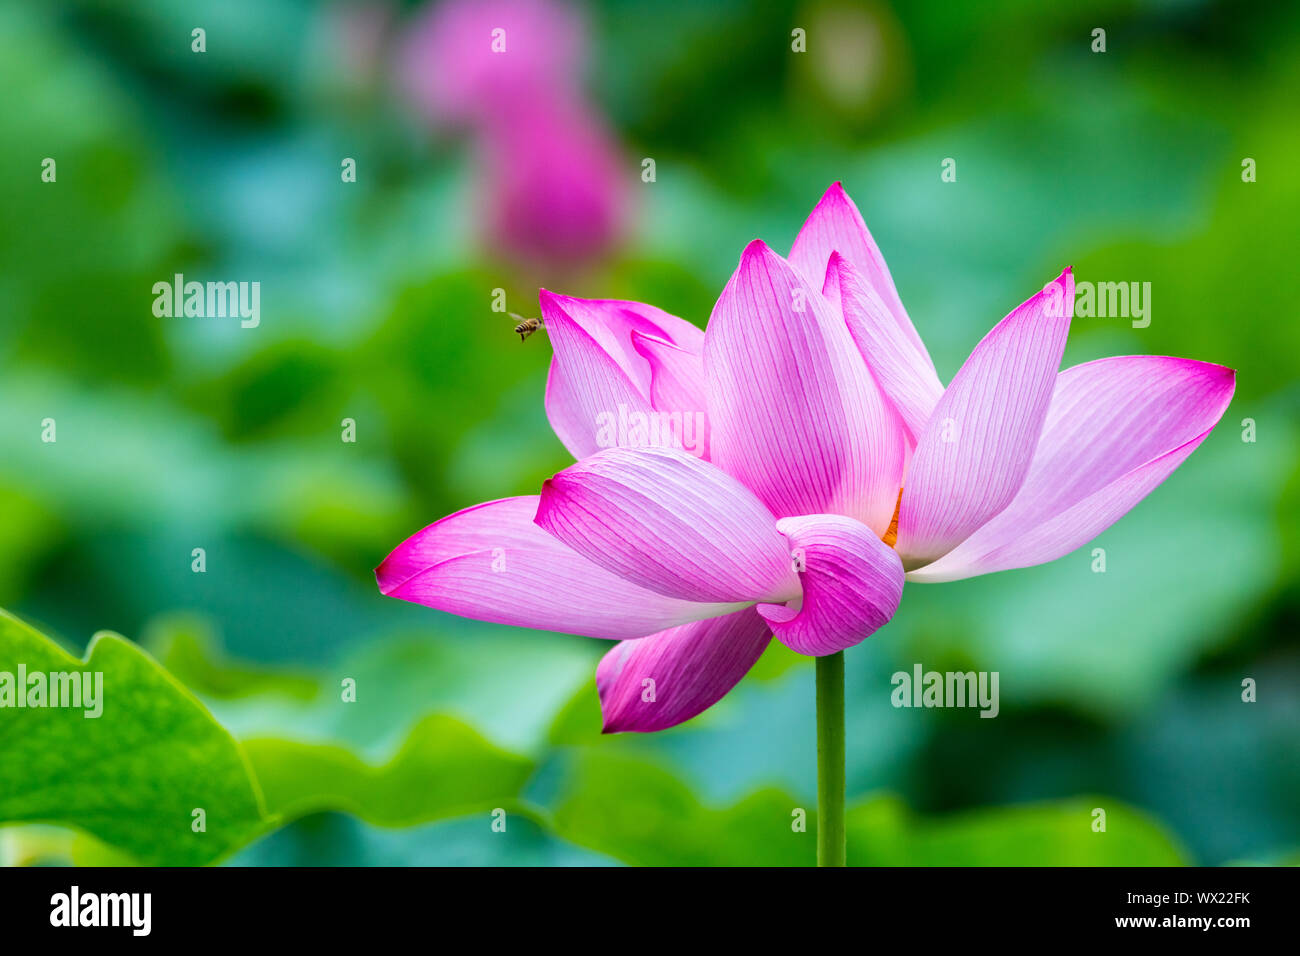 lotus flower closeup Stock Photo